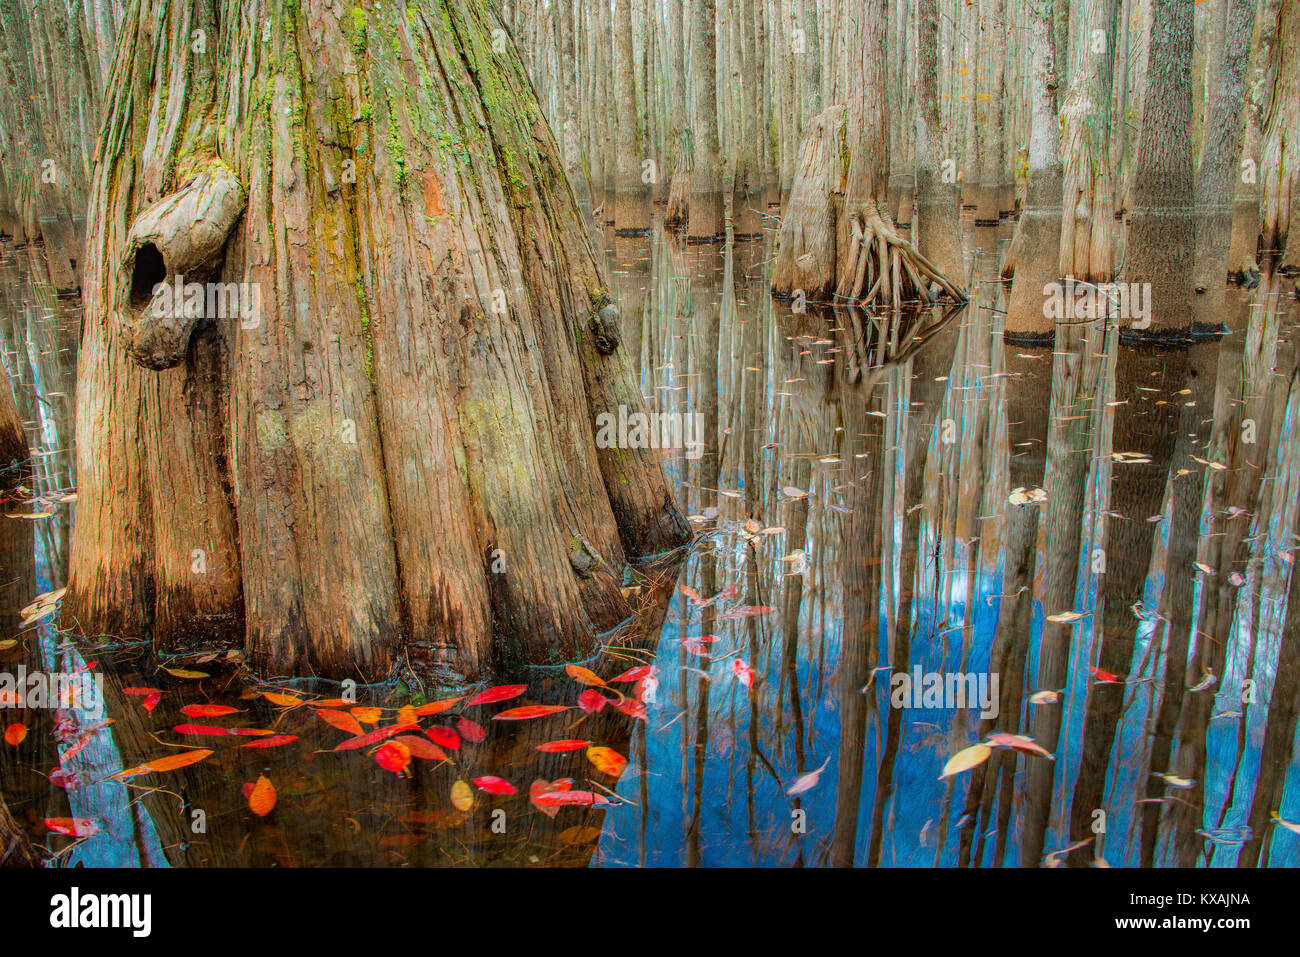 Herbst, kahlen Zypresse (Taxodium distichum), Teich distchum Zypresse (Taxodium distichum ascendens) Kathedrale Bay Heritage Wildlife Preserve, S. Carolina, USA von Bill Lea/Demb Stockfoto